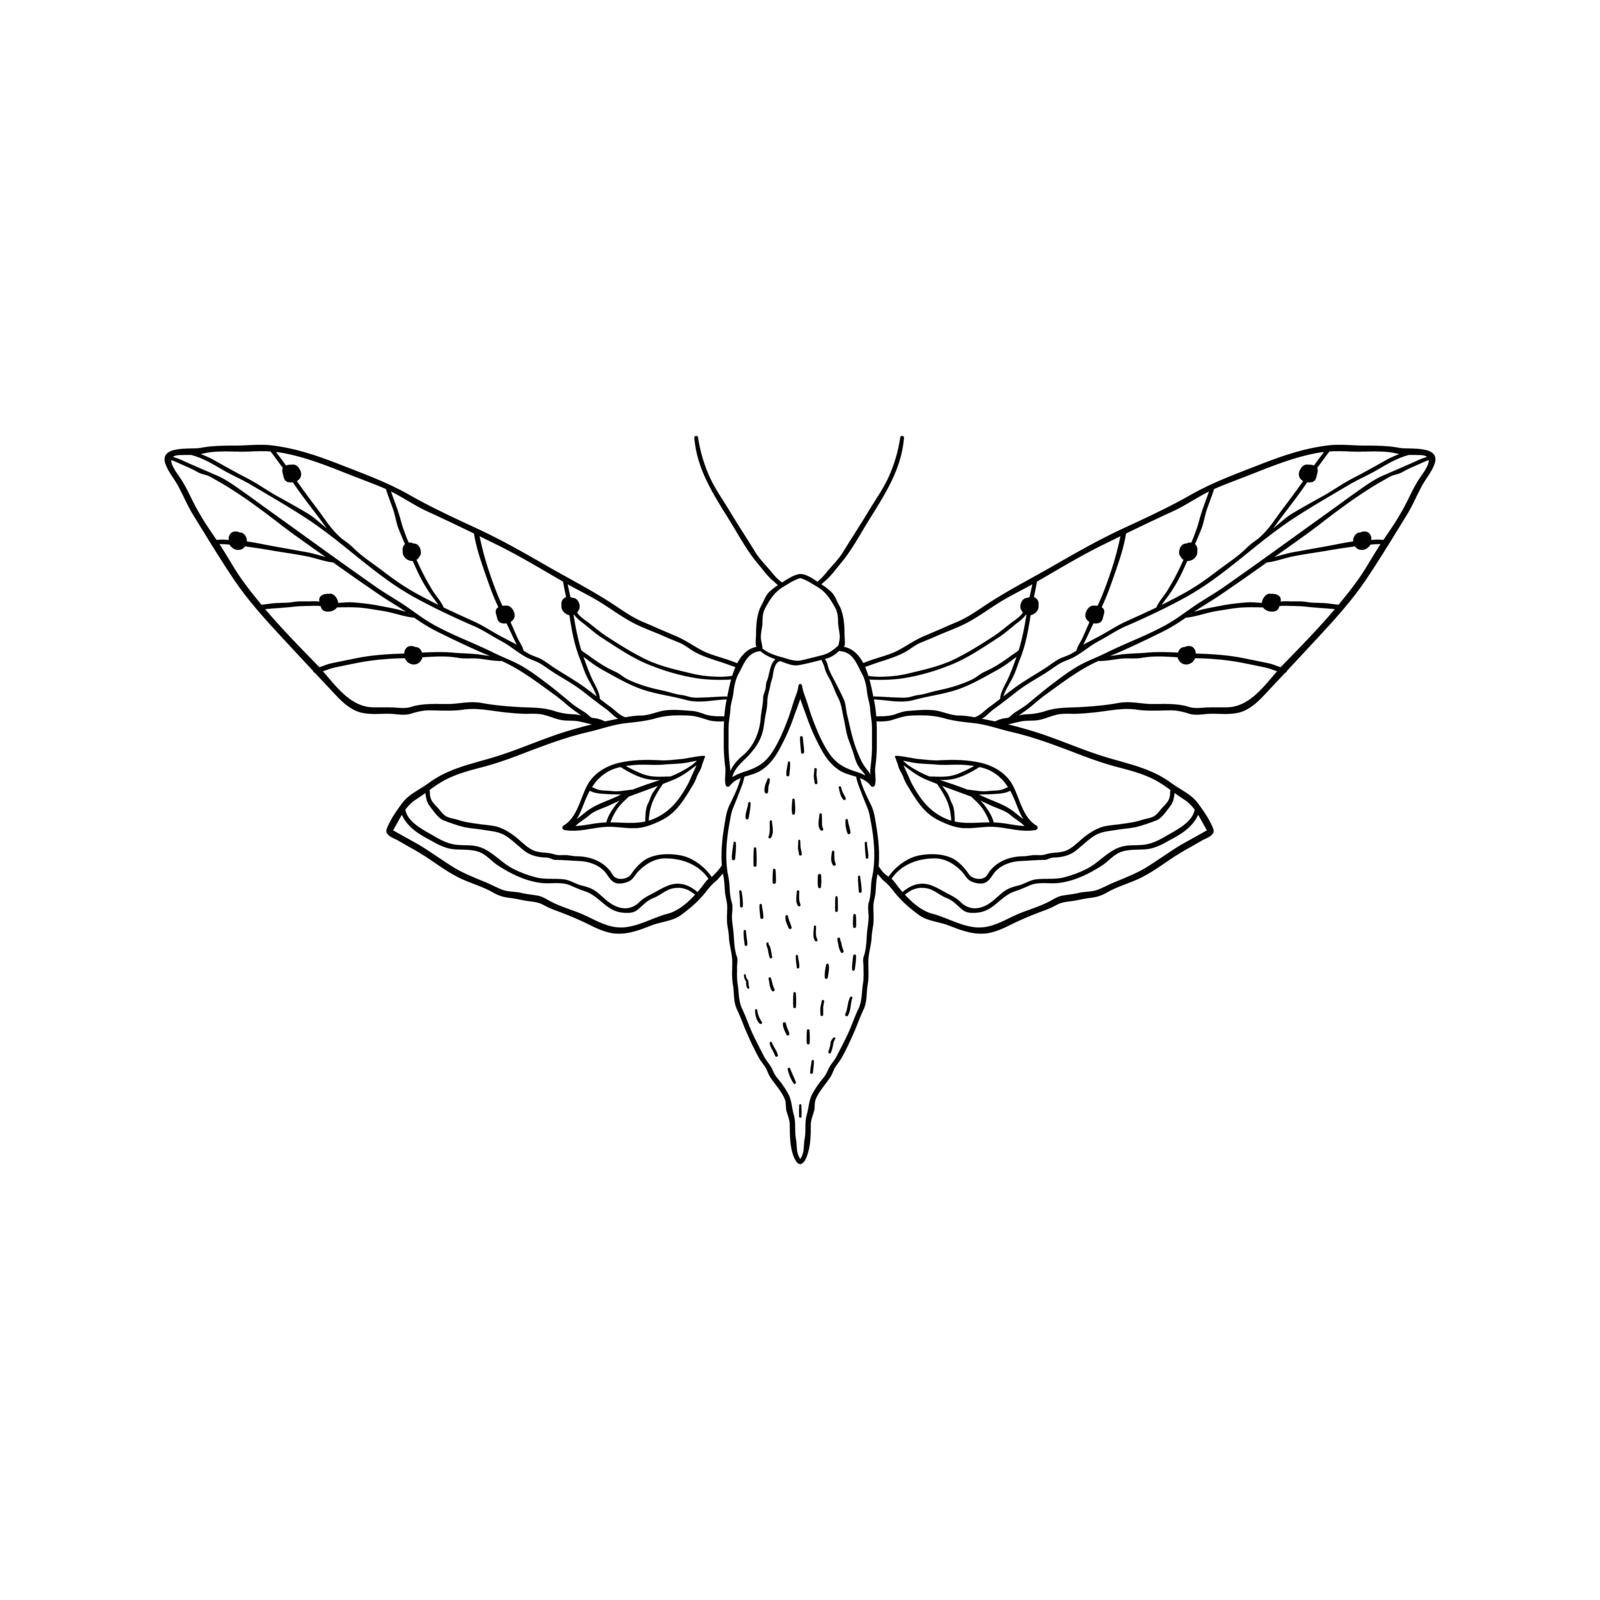 Butterfly in doodle style  by kiyanochka